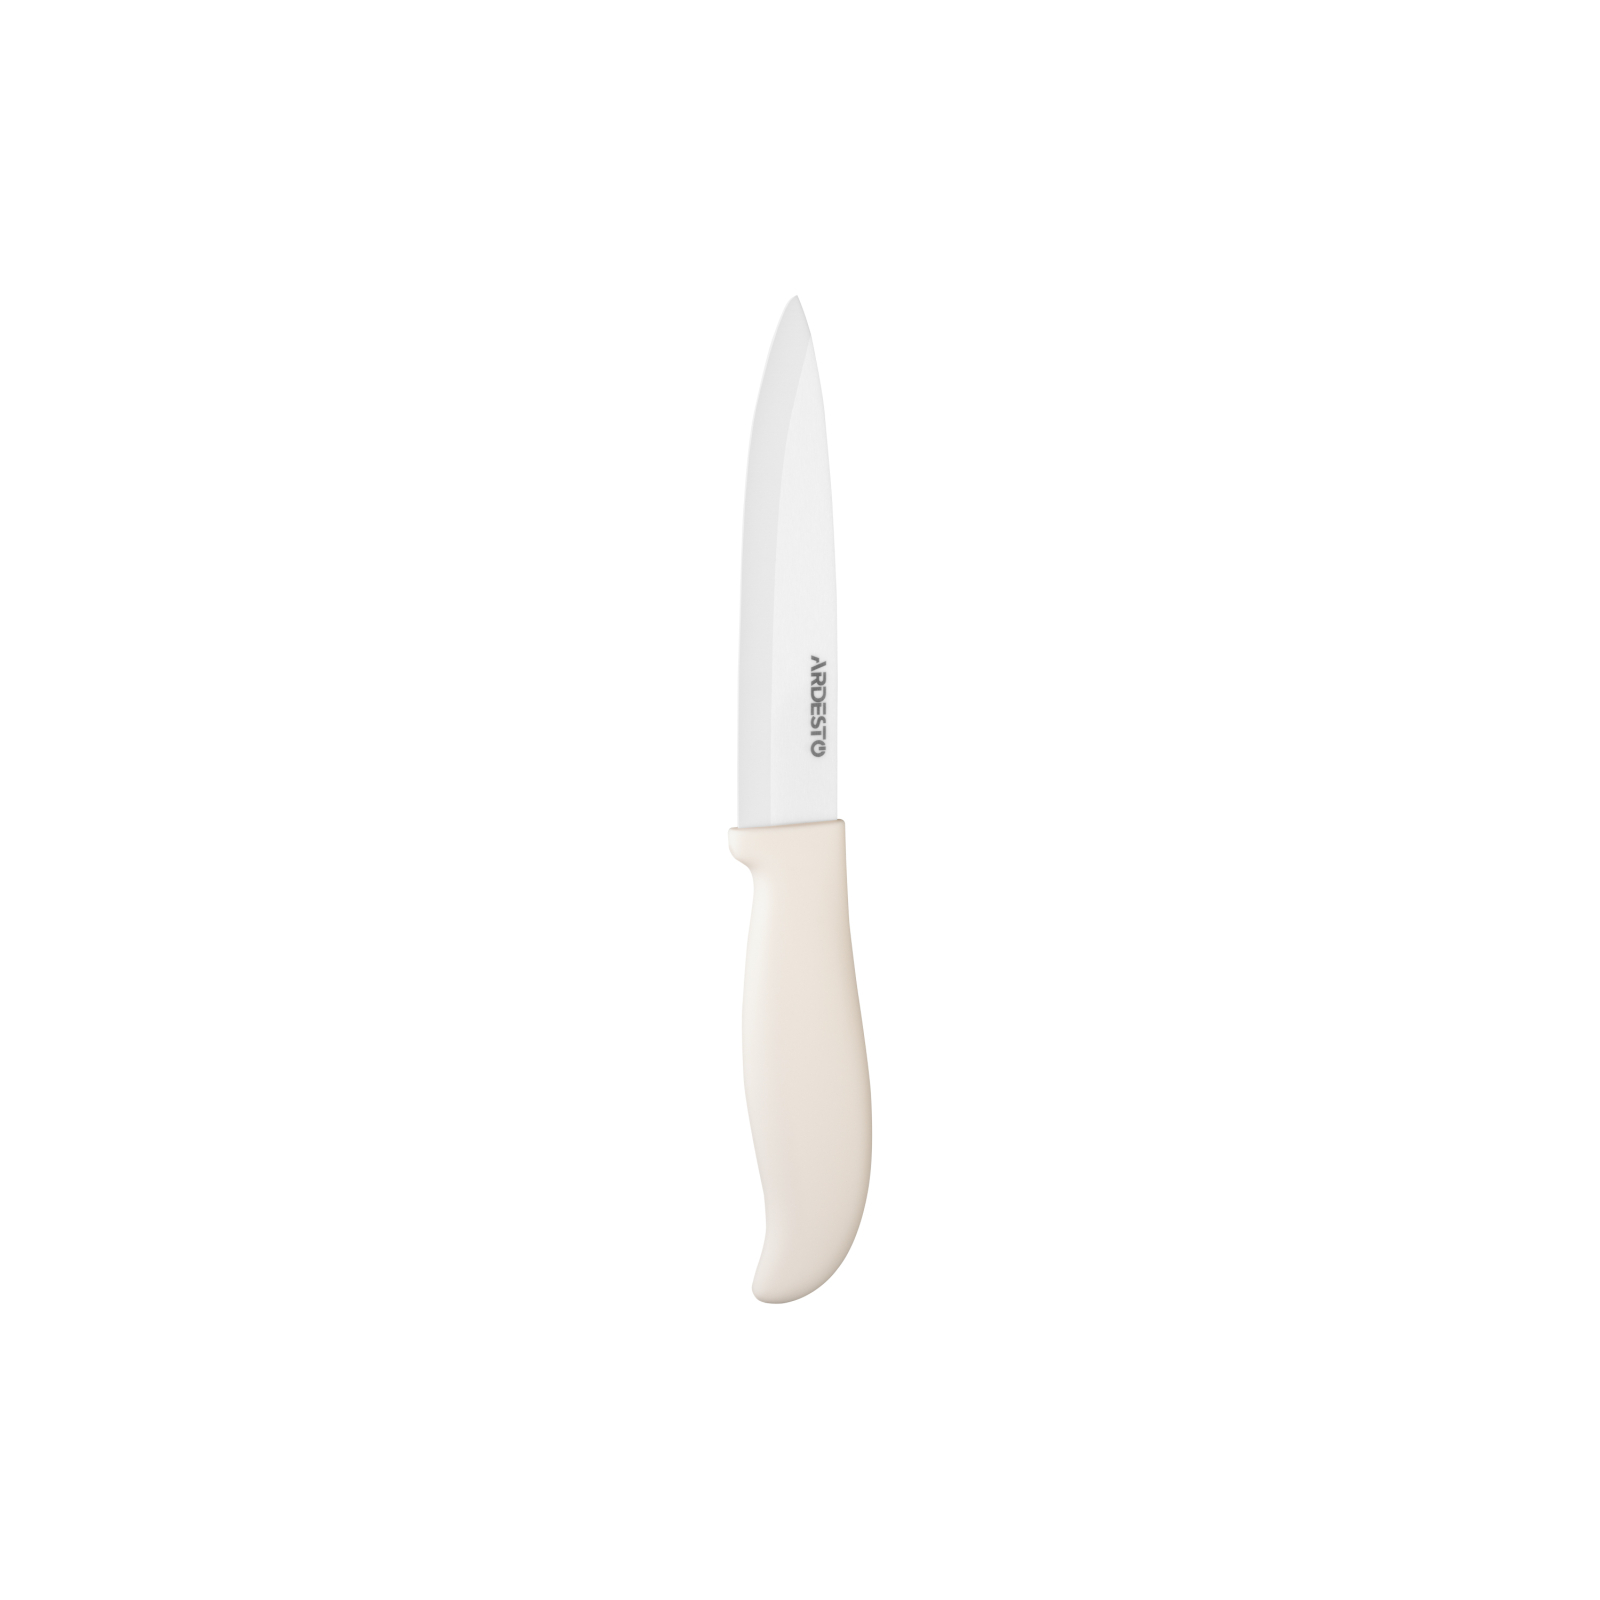 Кухонный нож Ardesto Fresh 24.5 см White (AR2124CW)